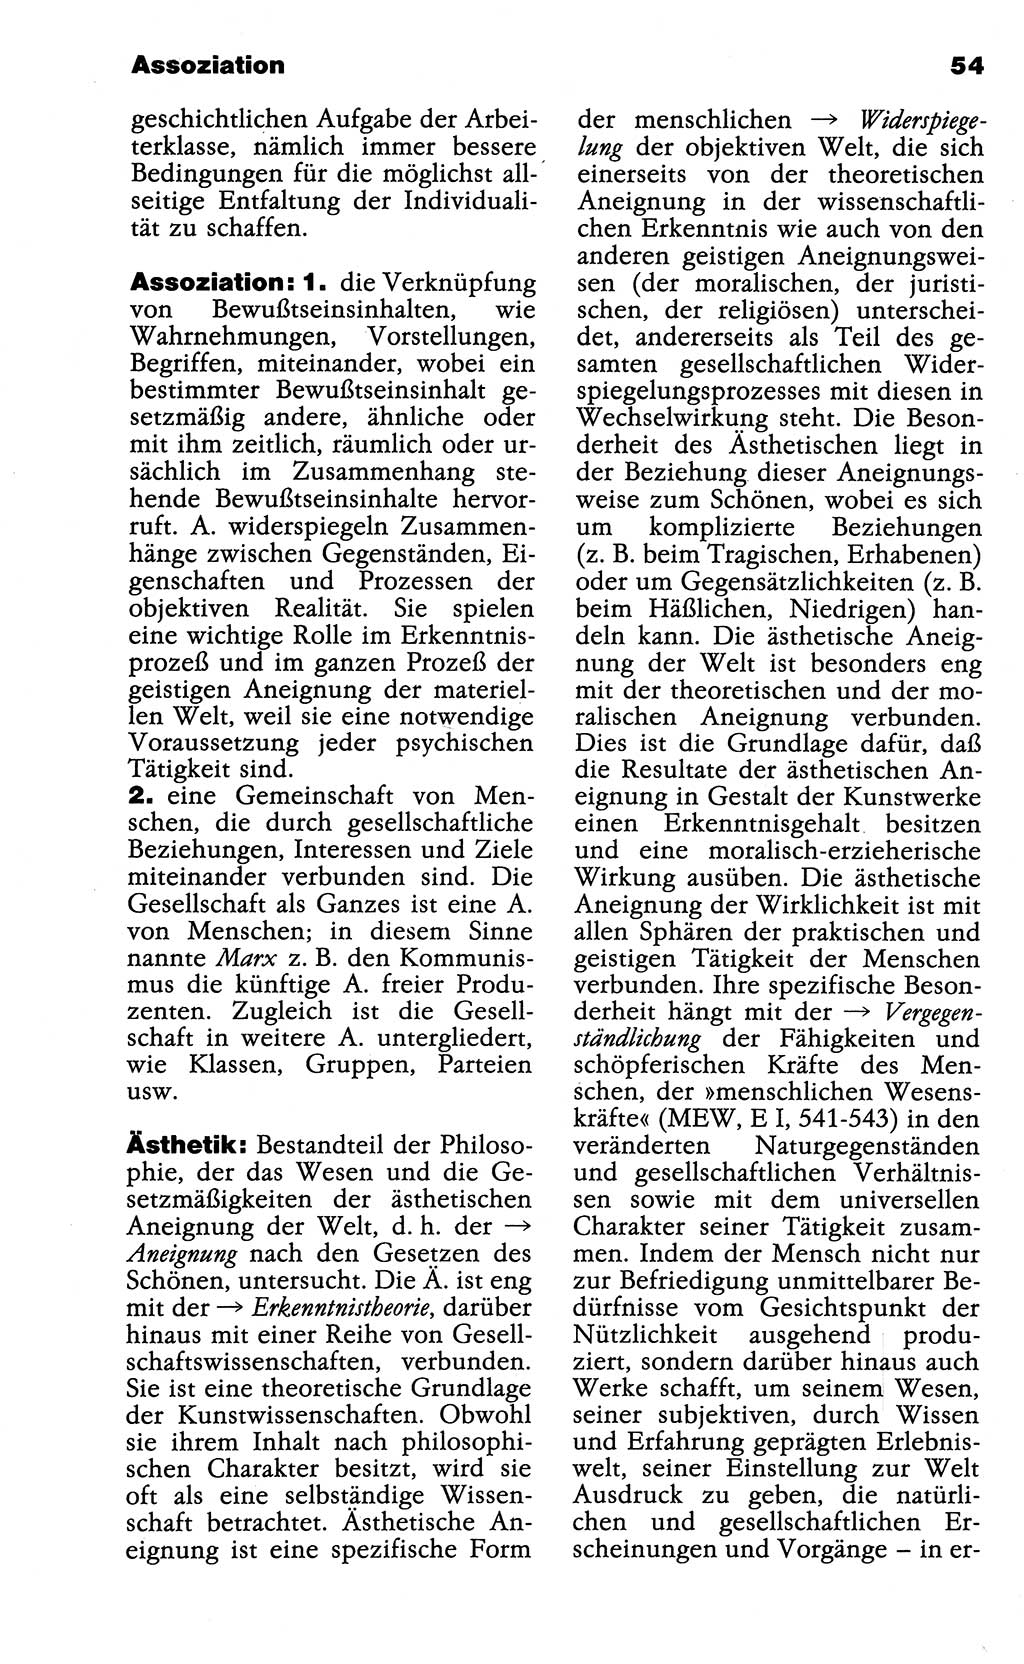 Wörterbuch der marxistisch-leninistischen Philosophie [Deutsche Demokratische Republik (DDR)] 1985, Seite 54 (Wb. ML Phil. DDR 1985, S. 54)